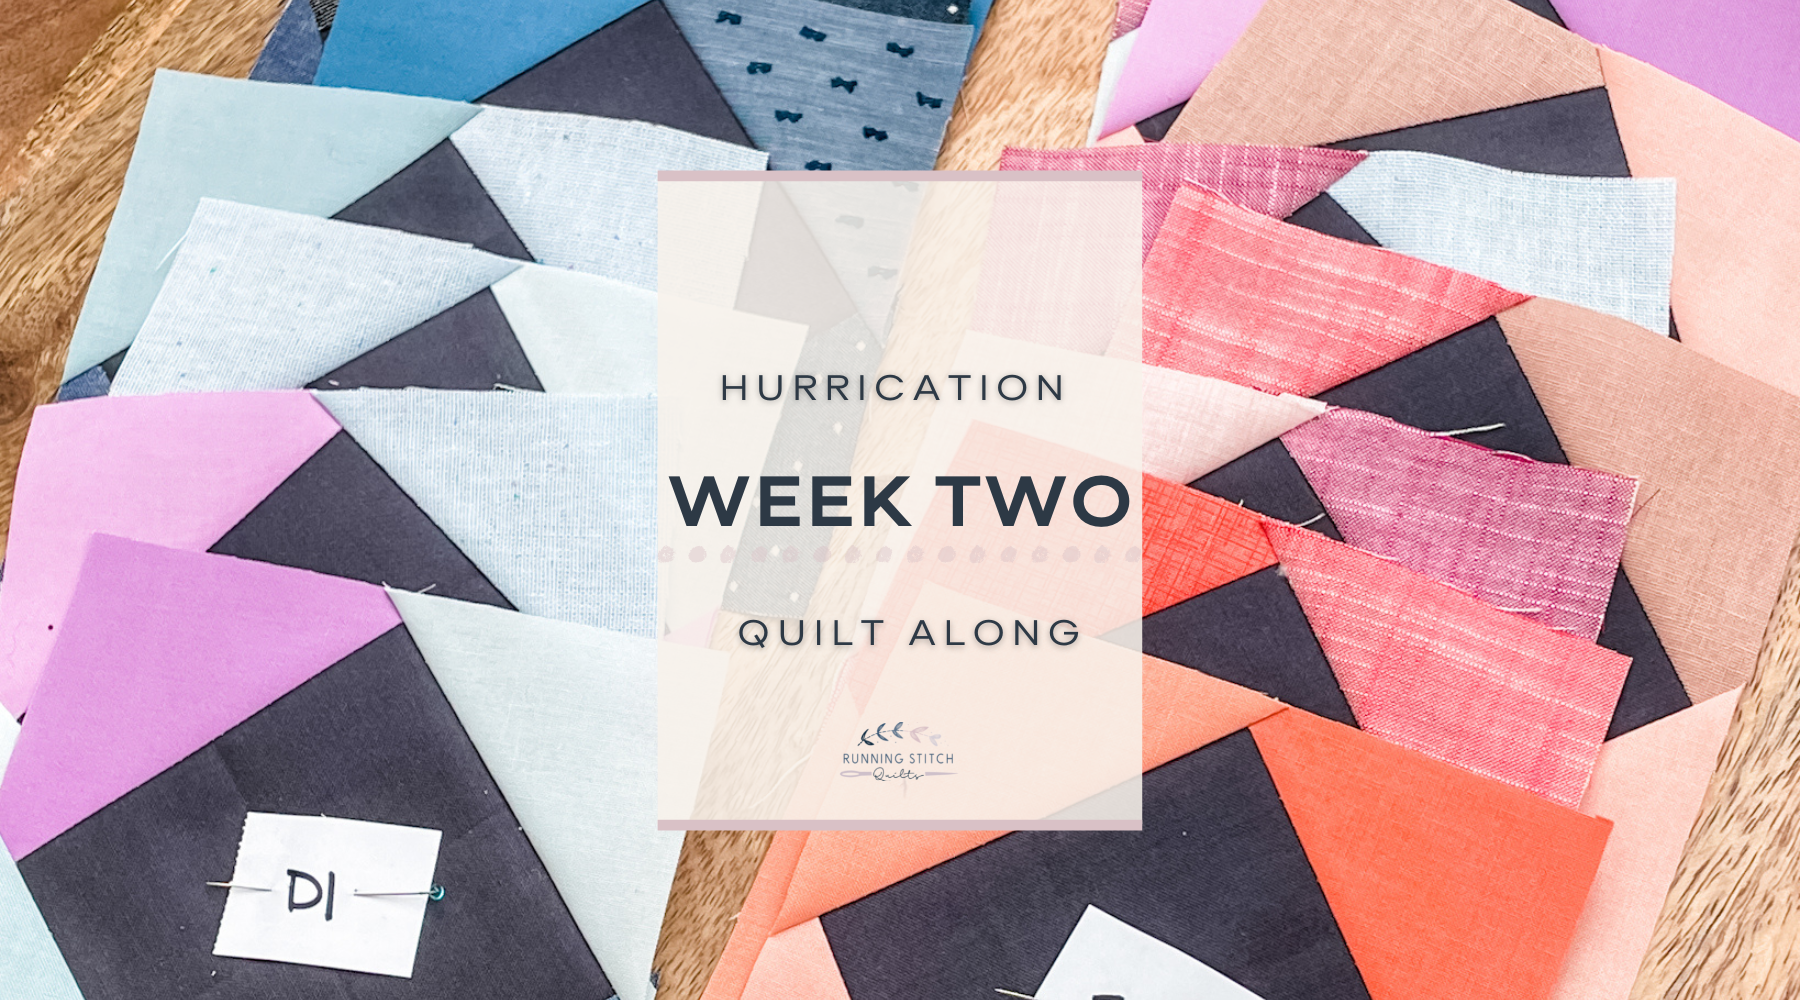 Hurrication Quilt Along - Week 2